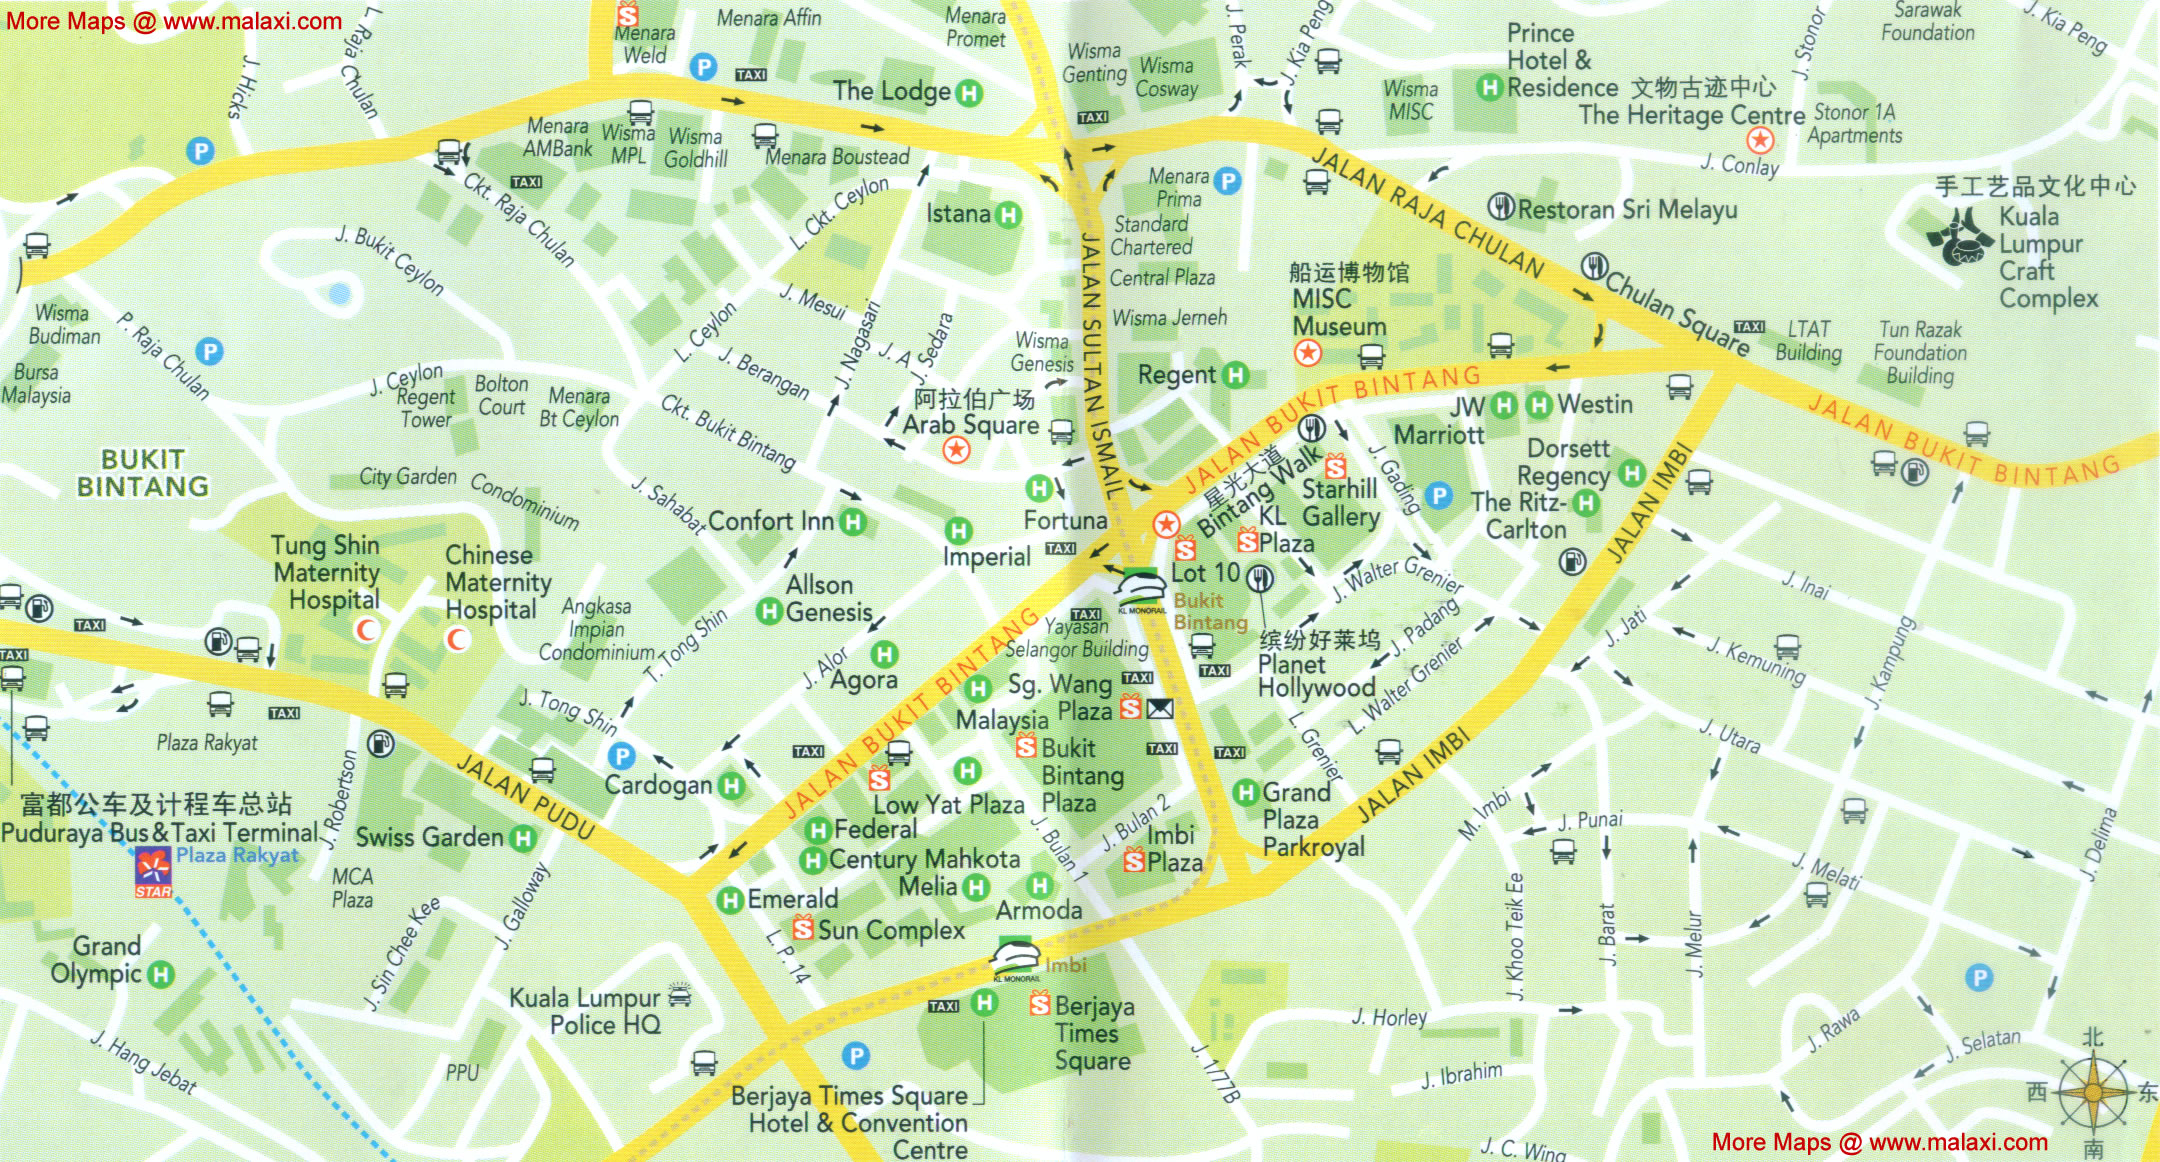 Jalan Bukit Bintang full details Map